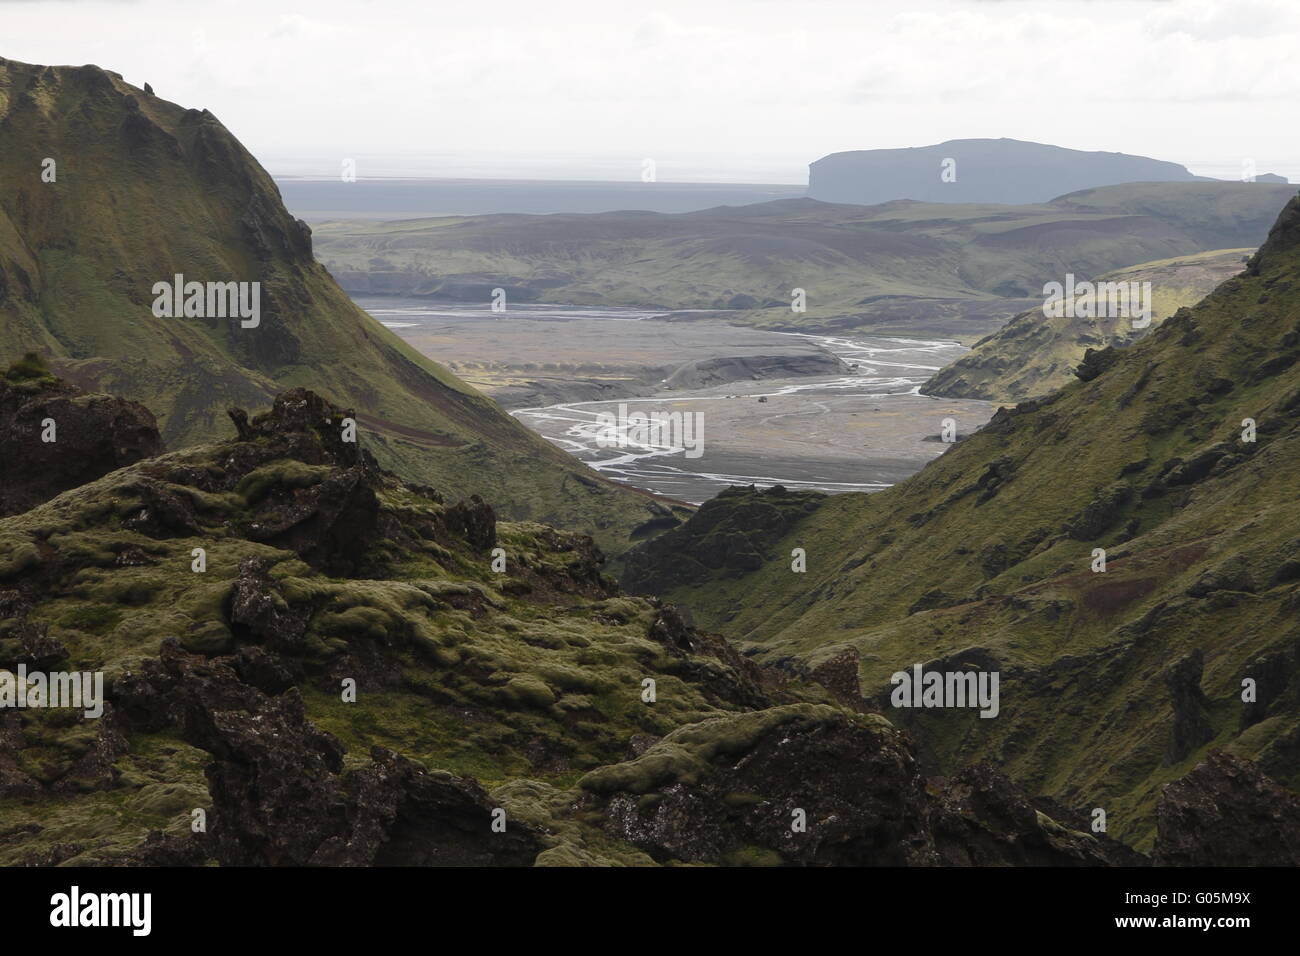 Mýrdalssandur come visto da un percorso escursionistico nei dintorni del Þakgil (Thakgil) campeggio Foto Stock